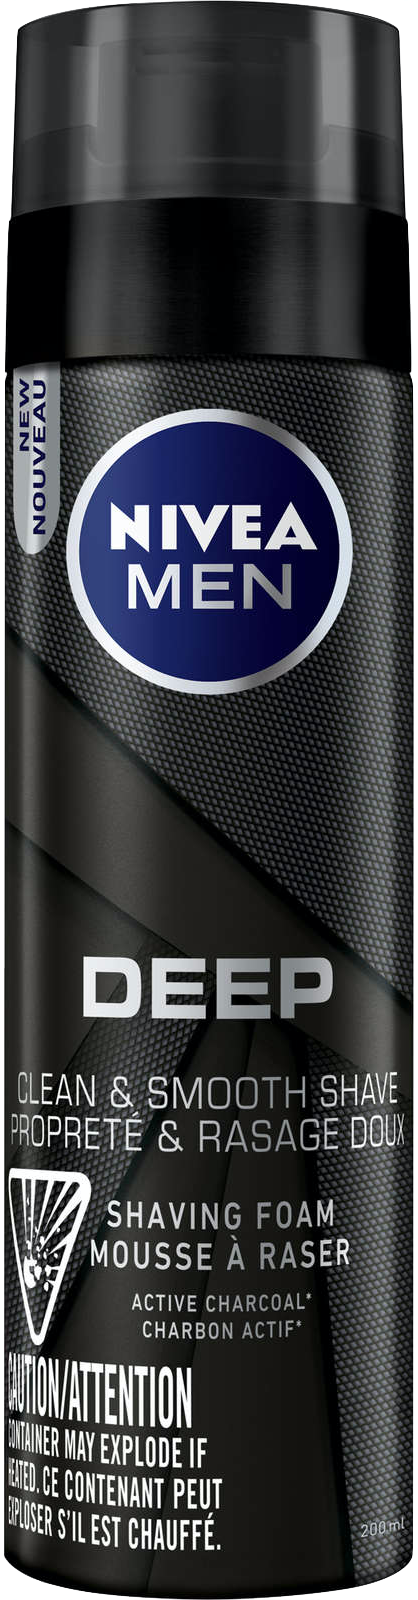 Nivea Men Deep Shaving Foam 200mL - Quecan